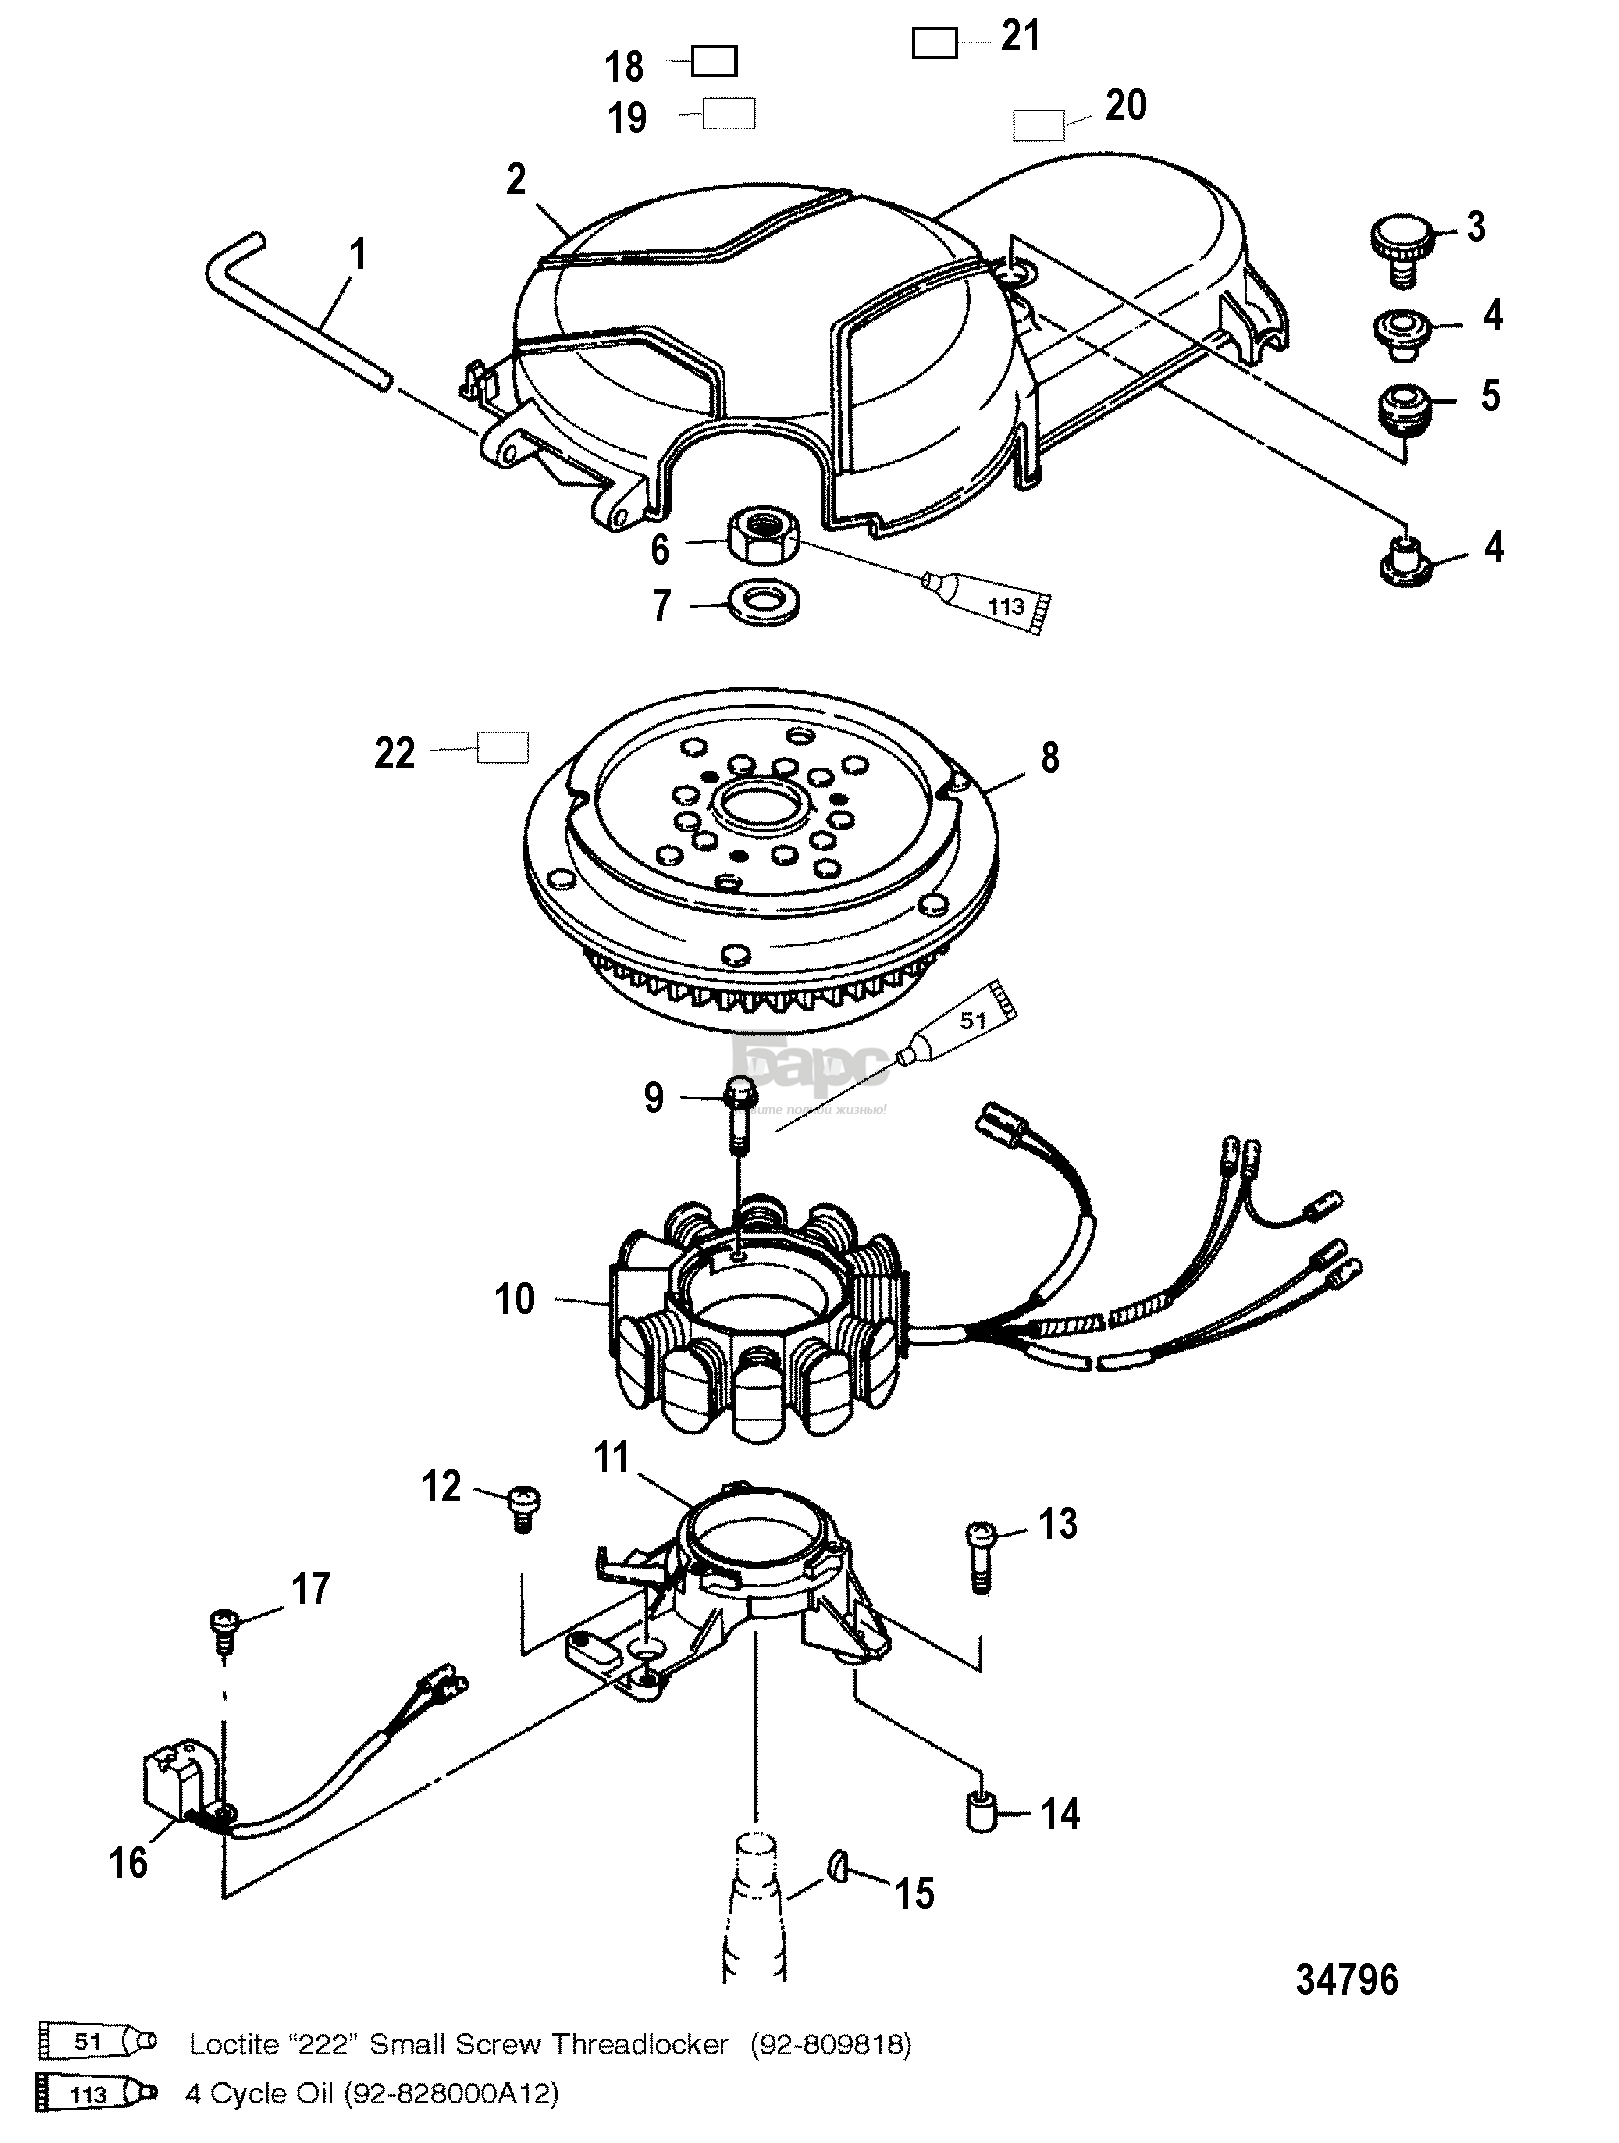 Stator/Rotor